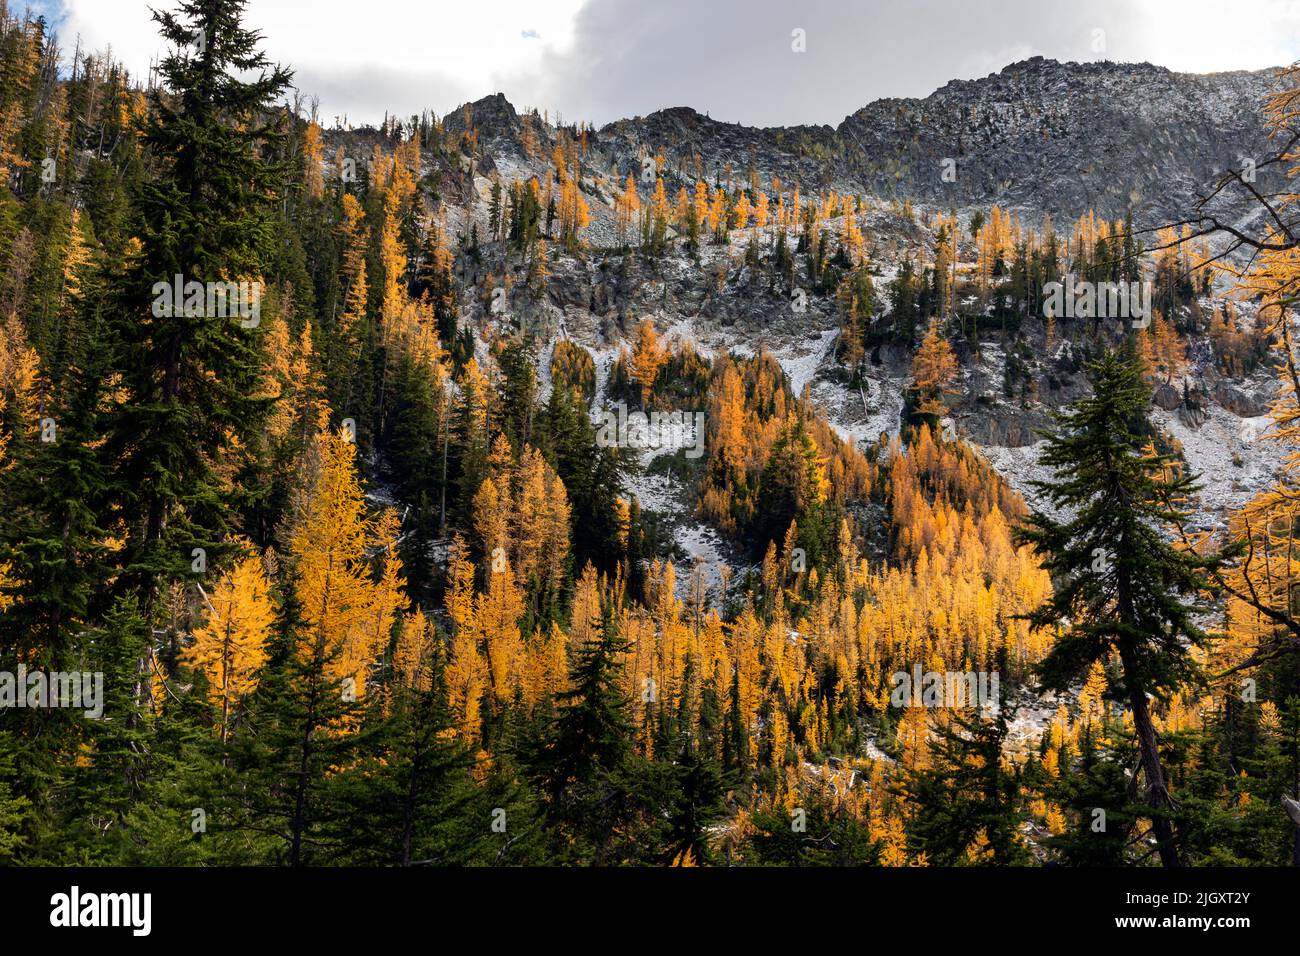 WA21719-00...WASHINGTON - Fall colored alpine larch trees in basin above Upper Larch Lake in the Glacier Peak Wilderness area. Stock Photo